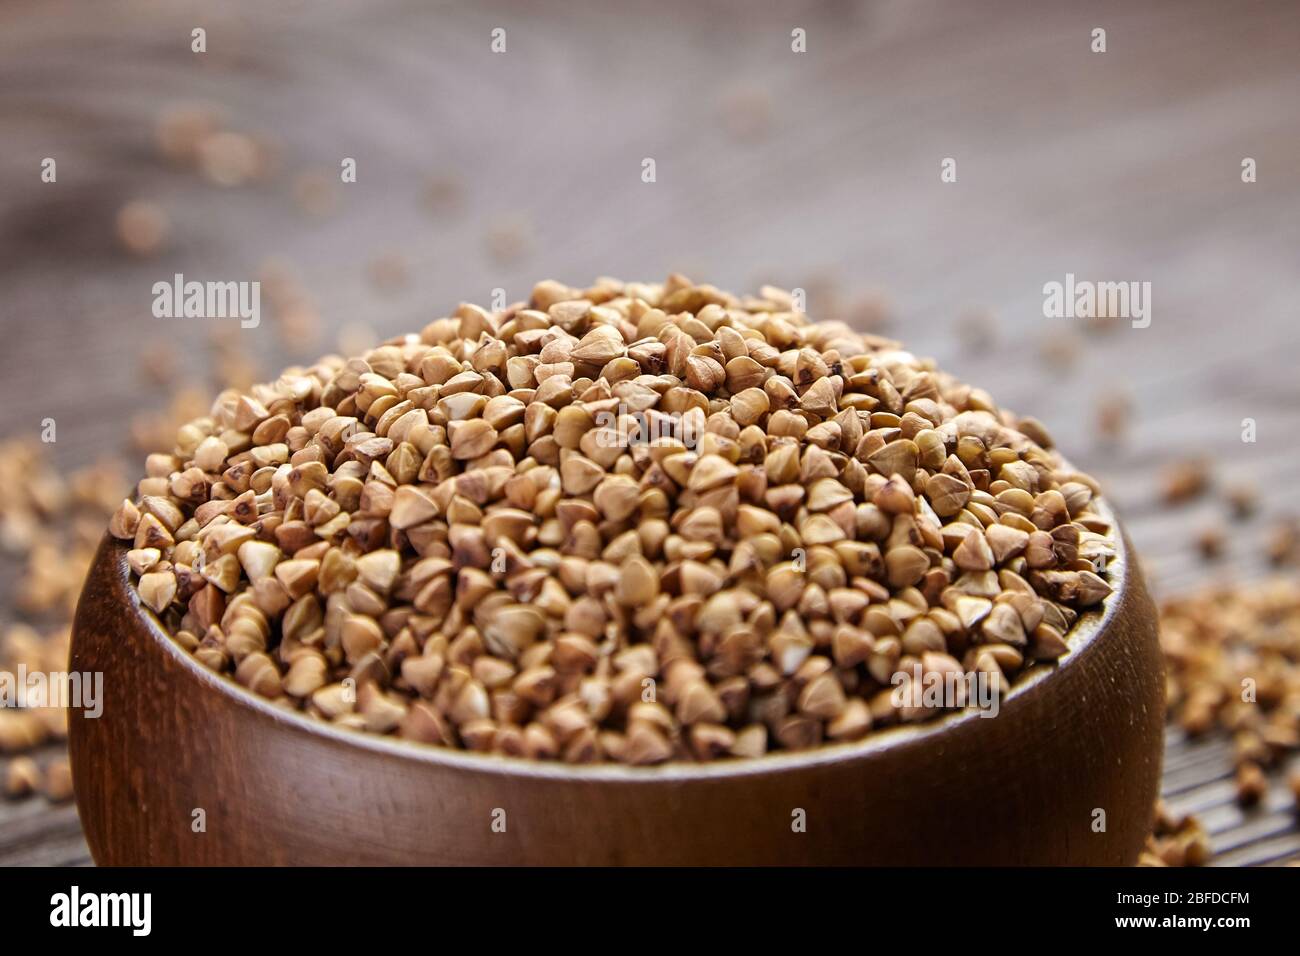 Gruaux de sarrasin (graines décortiquées) dans un bol en bois, foyer sélectif. Grains entiers de sarrasin sur table brune, gros plan. Super-nourriture, nourriture saine sans gluten Banque D'Images